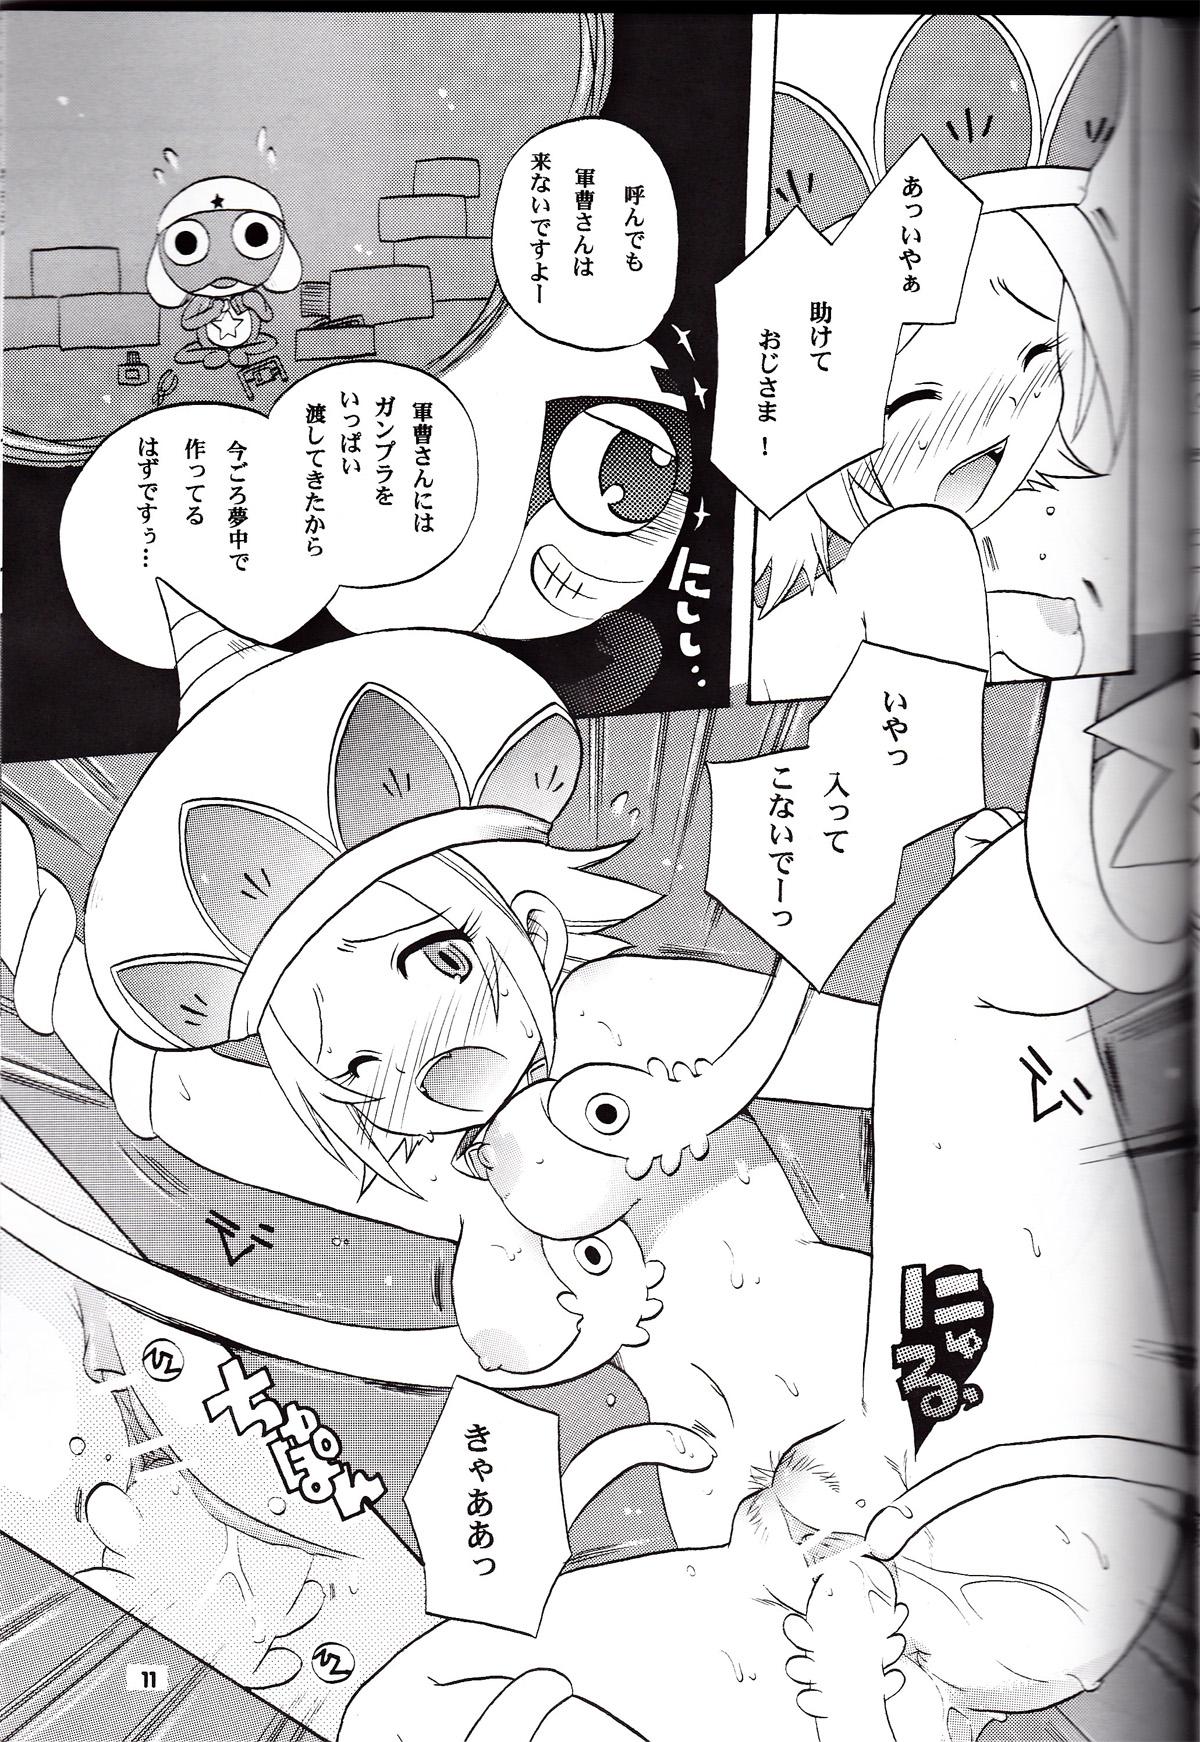 Doggy Ikenai Asobi 2 - Keroro gunsou Humiliation - Page 10